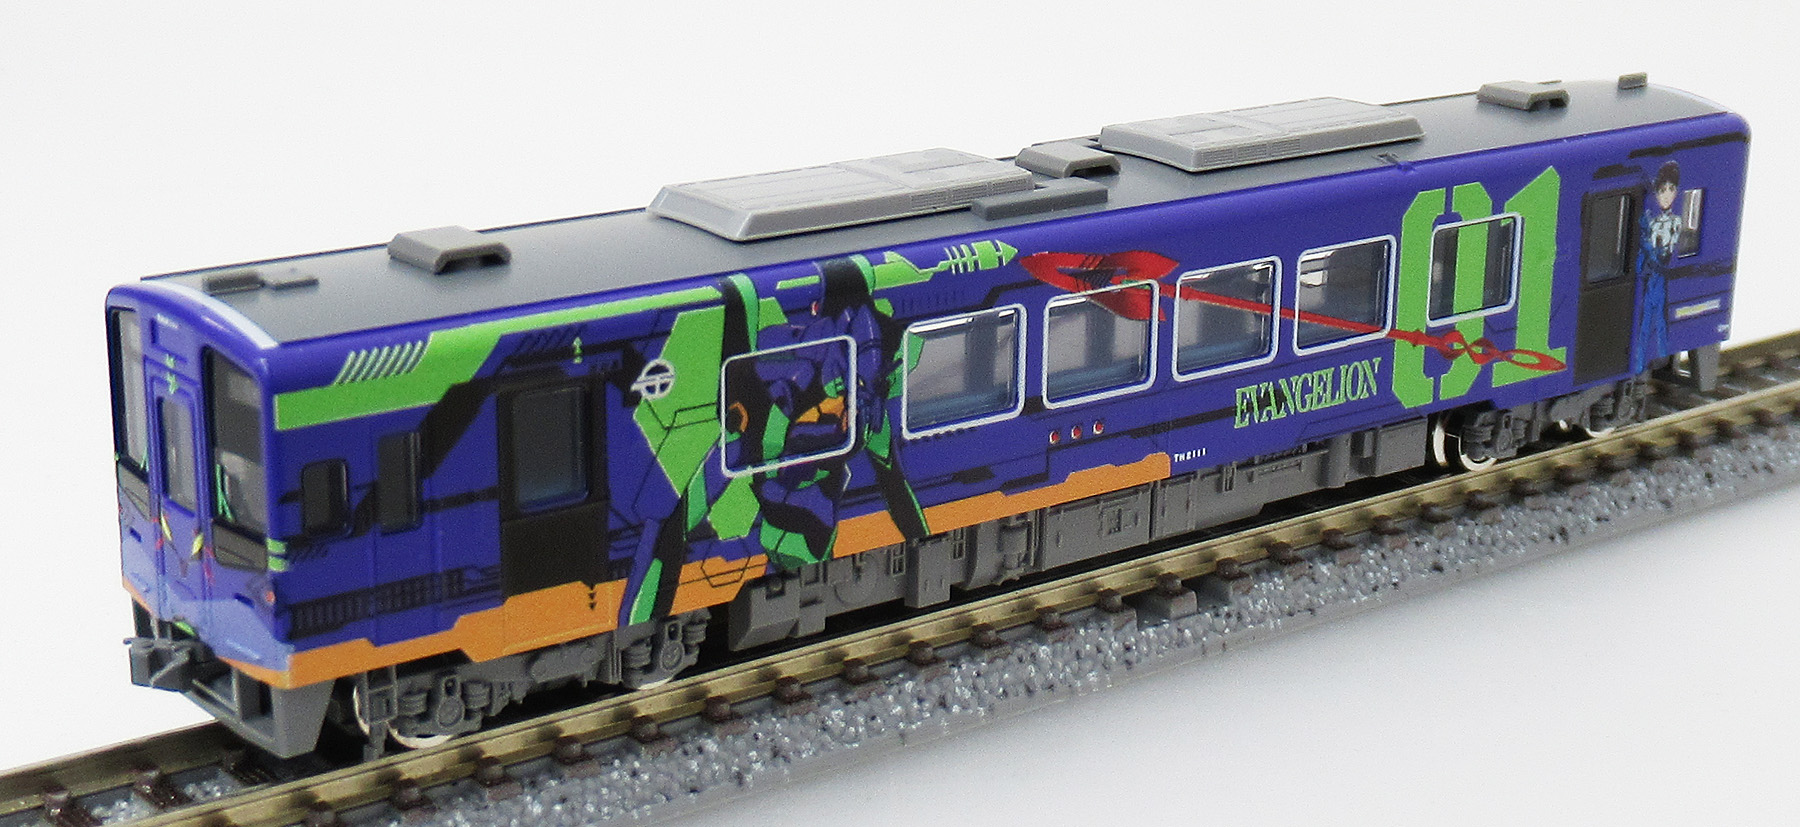 公式]鉄道模型(8610天竜浜名湖鉄道 TH2100形(TH2111号車 